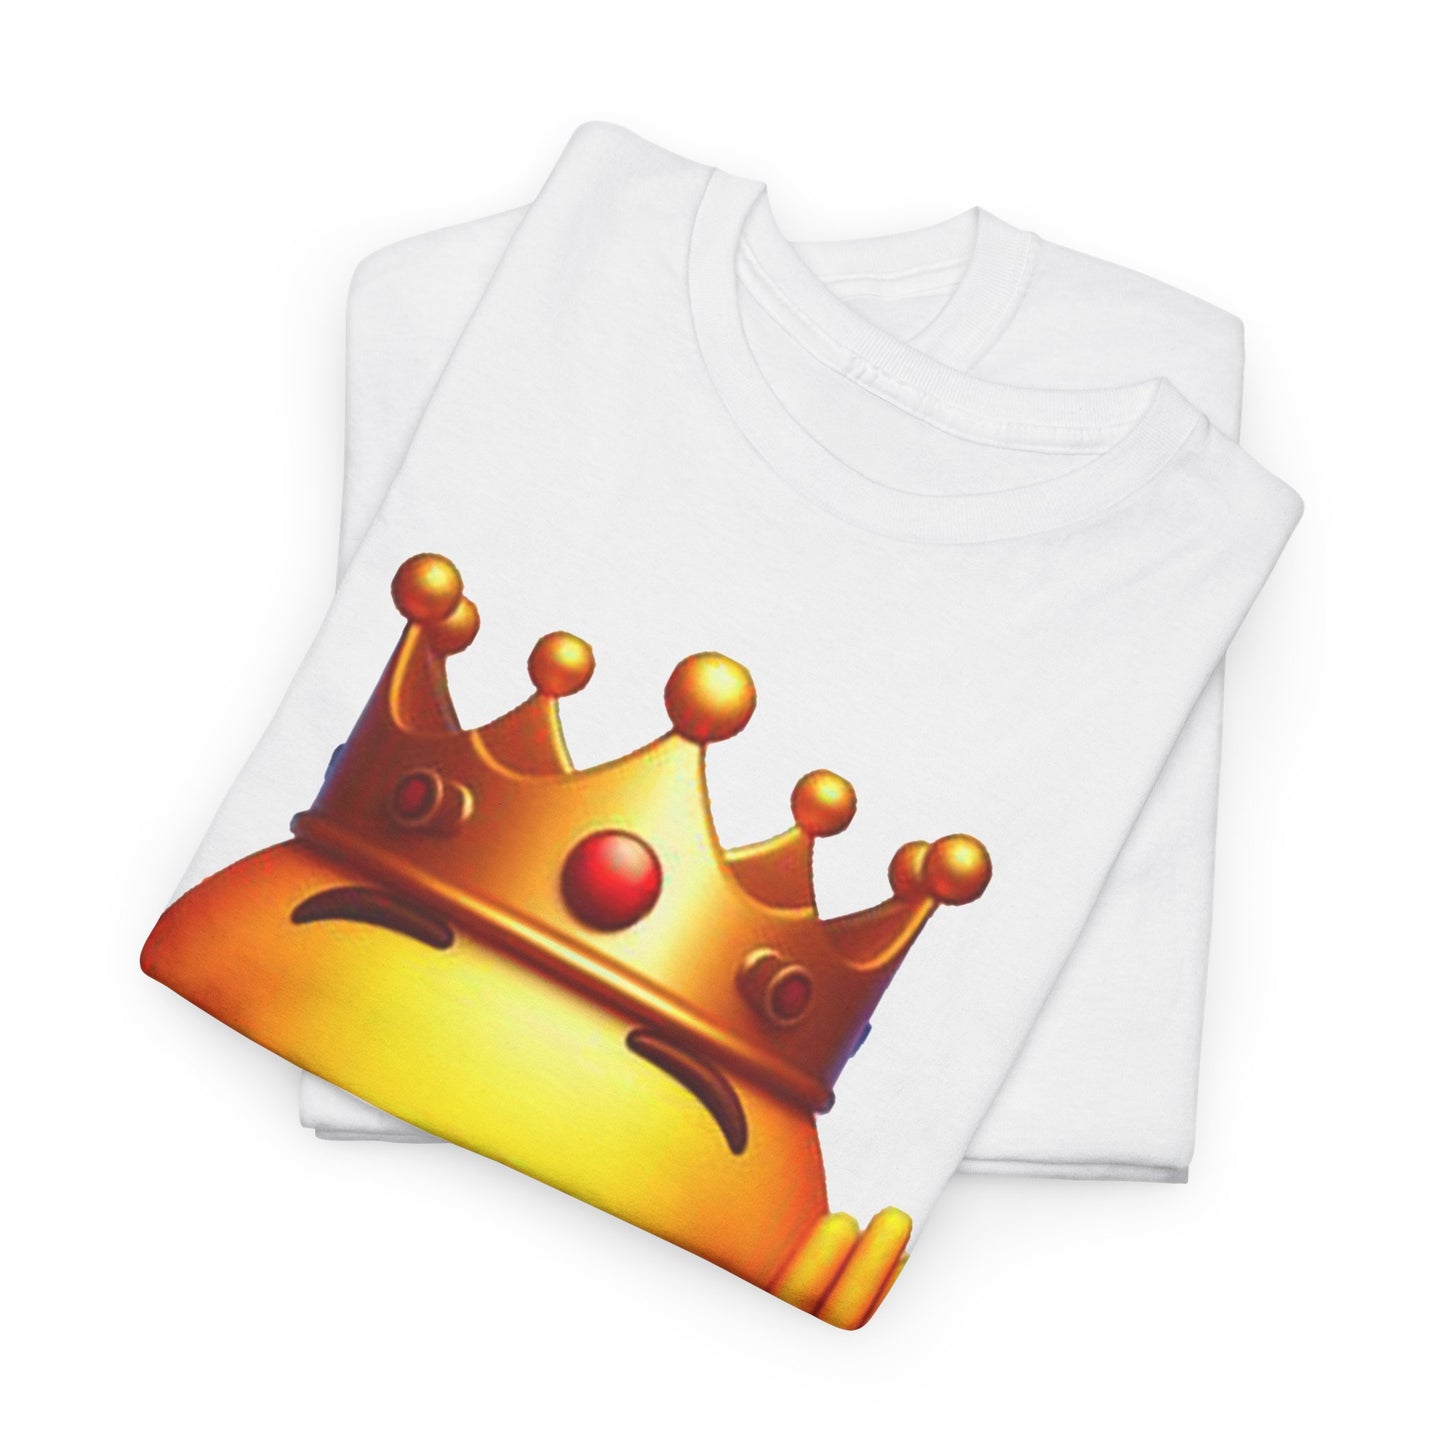 King Baldwin T-Shirt